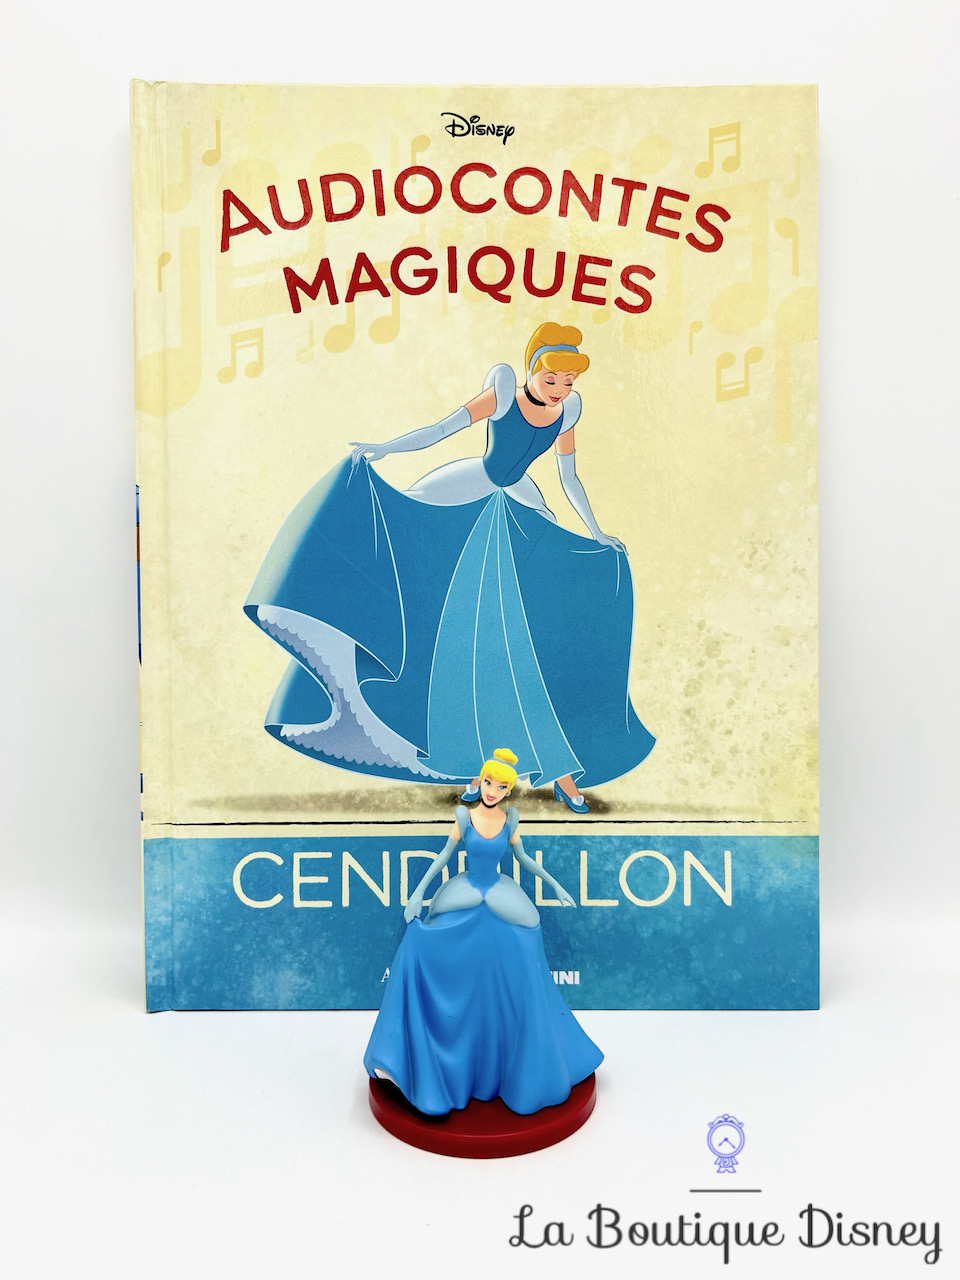 Livre Audiocontes Magiques Cendrillon Disney Altaya encyclopédie figurine